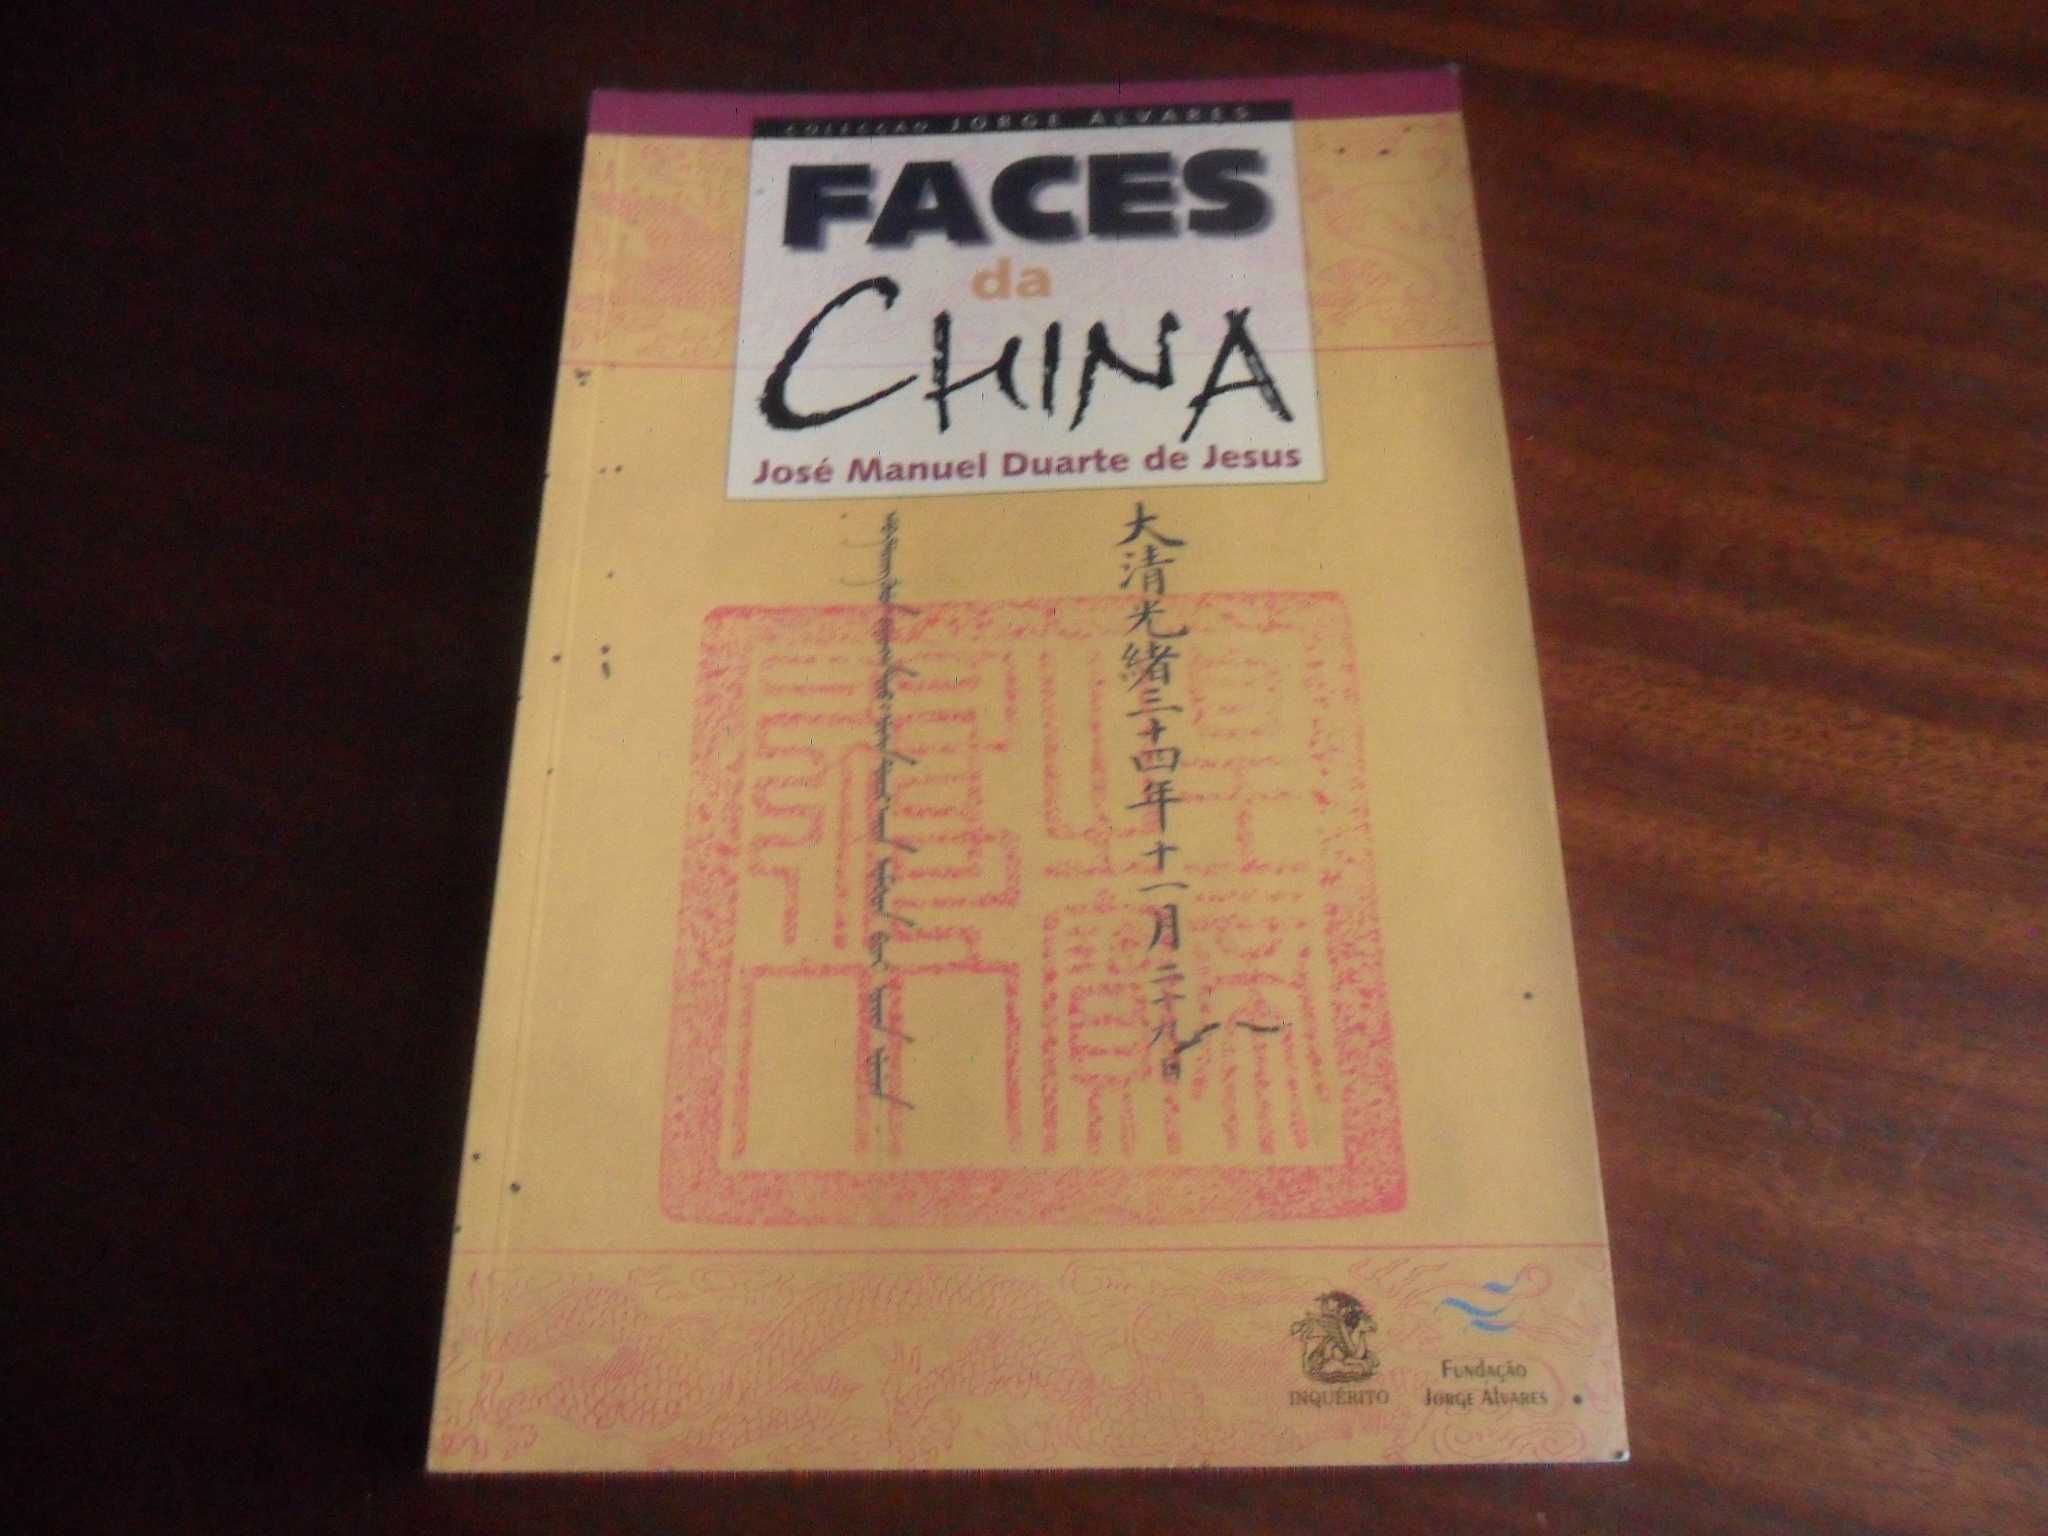 "Faces da China" de José Manuel Duarte de Jesus - 1ª Edição de 2007